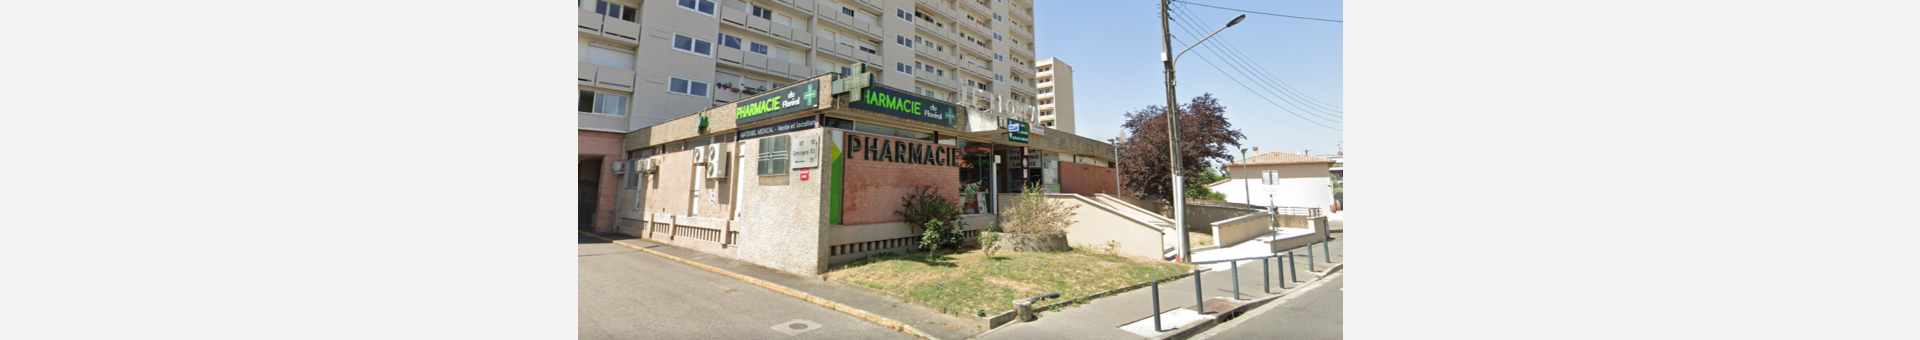 Pharmacie du Floreal,Toulouse